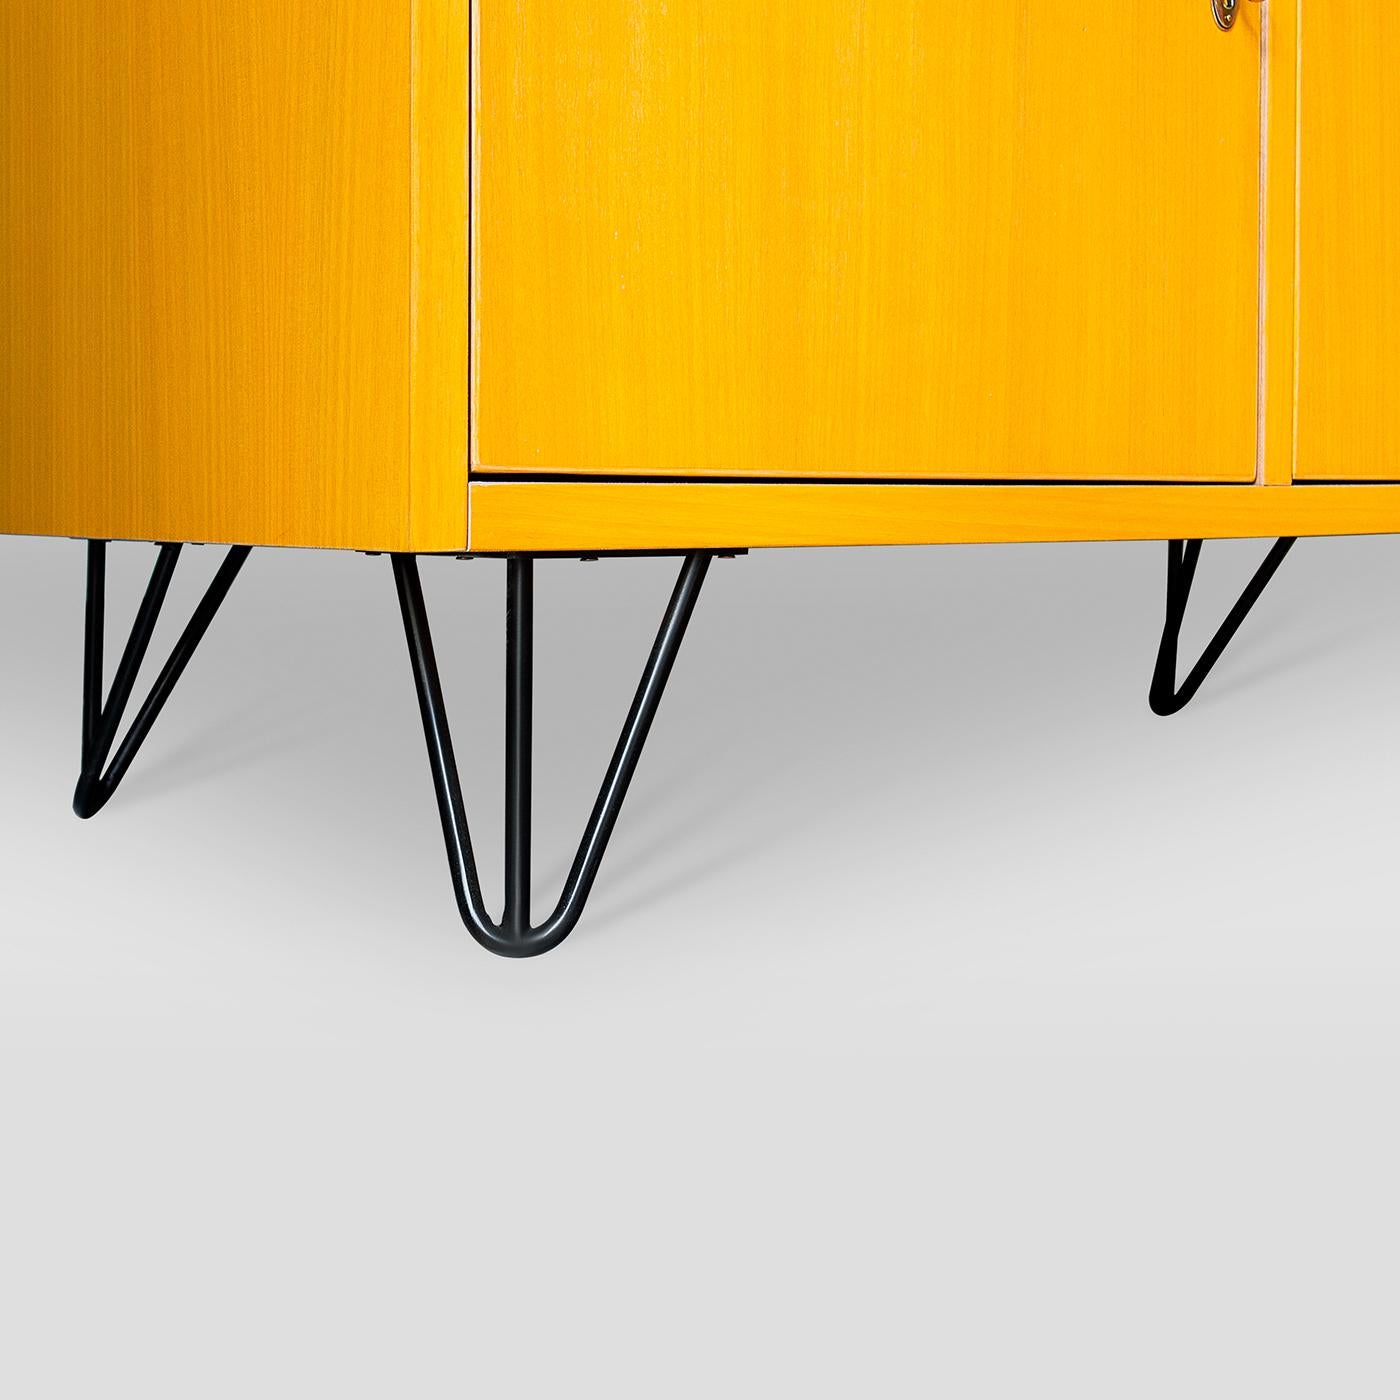 L'utilisation de chêne massif, mis en valeur par sa finition naturelle à l'intérieur et teinté en jaune vif à l'extérieur, définit ce meuble élégant et emblématique des années 50. Montée sur des pieds en fil métallique, elle offre trois vastes